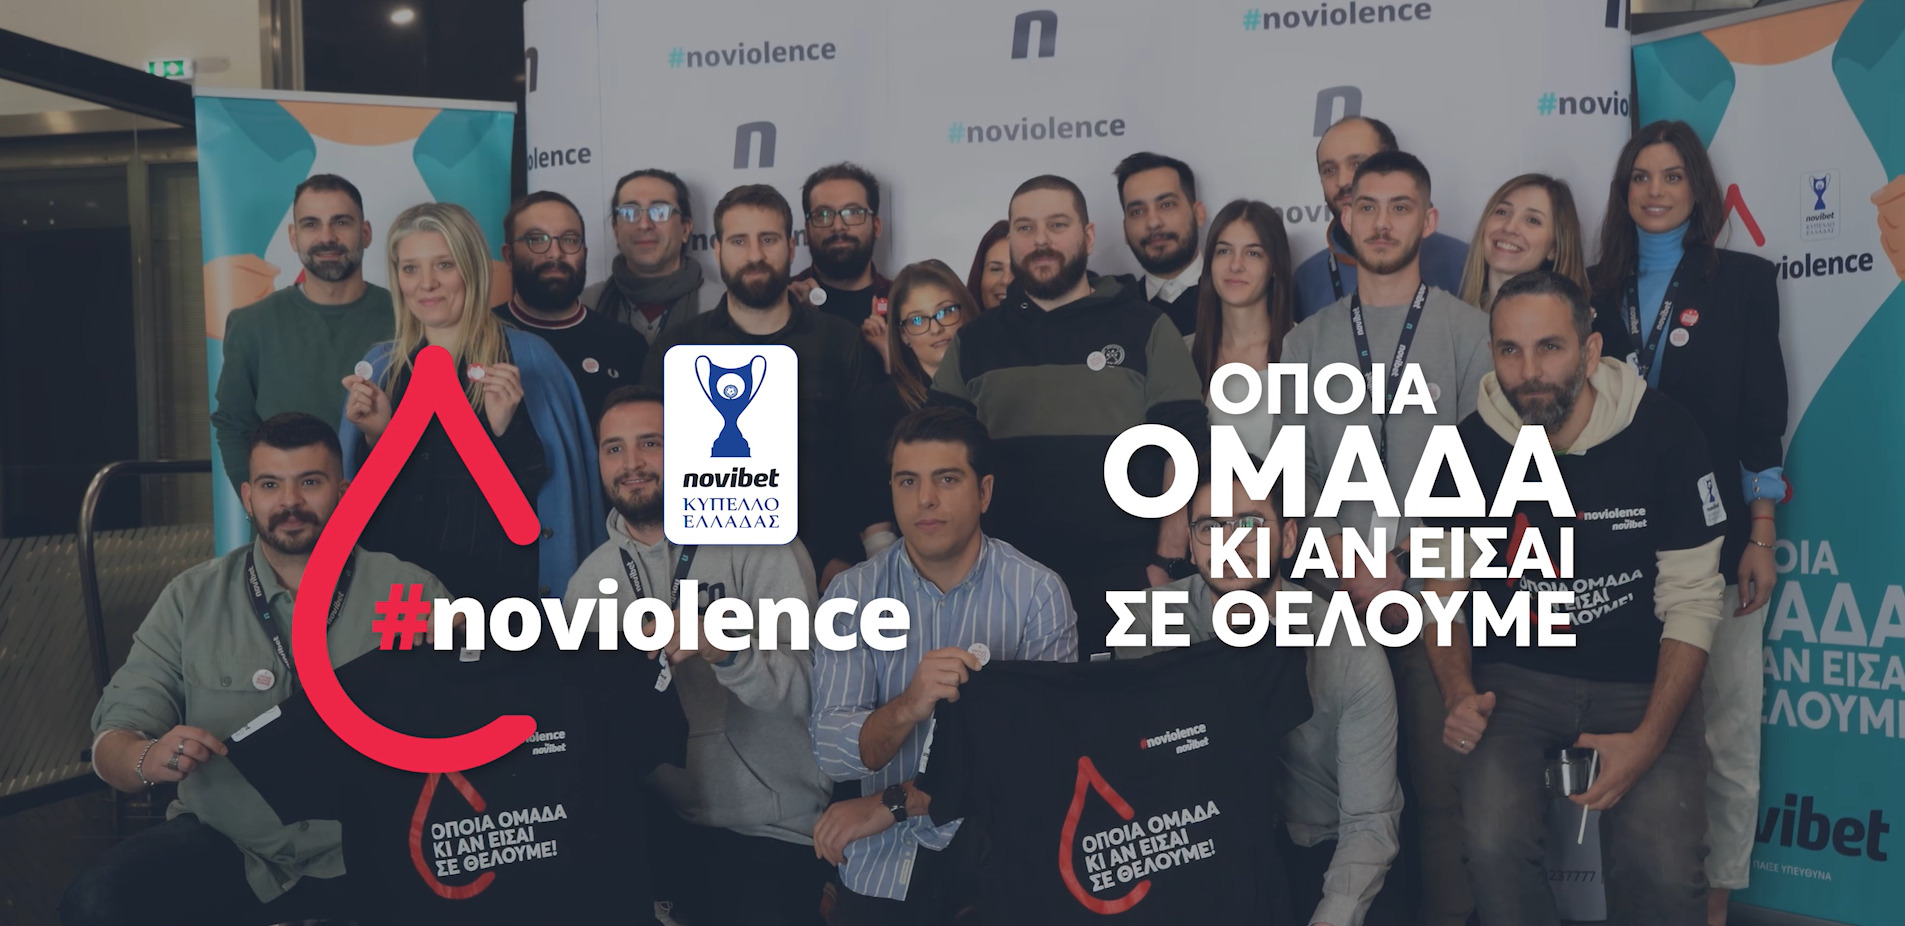 Η Novibet διεξάγει με επιτυχία για δεύτερη συνεχόμενη χρονιά την δράση αιμοδοσίας #noviolence